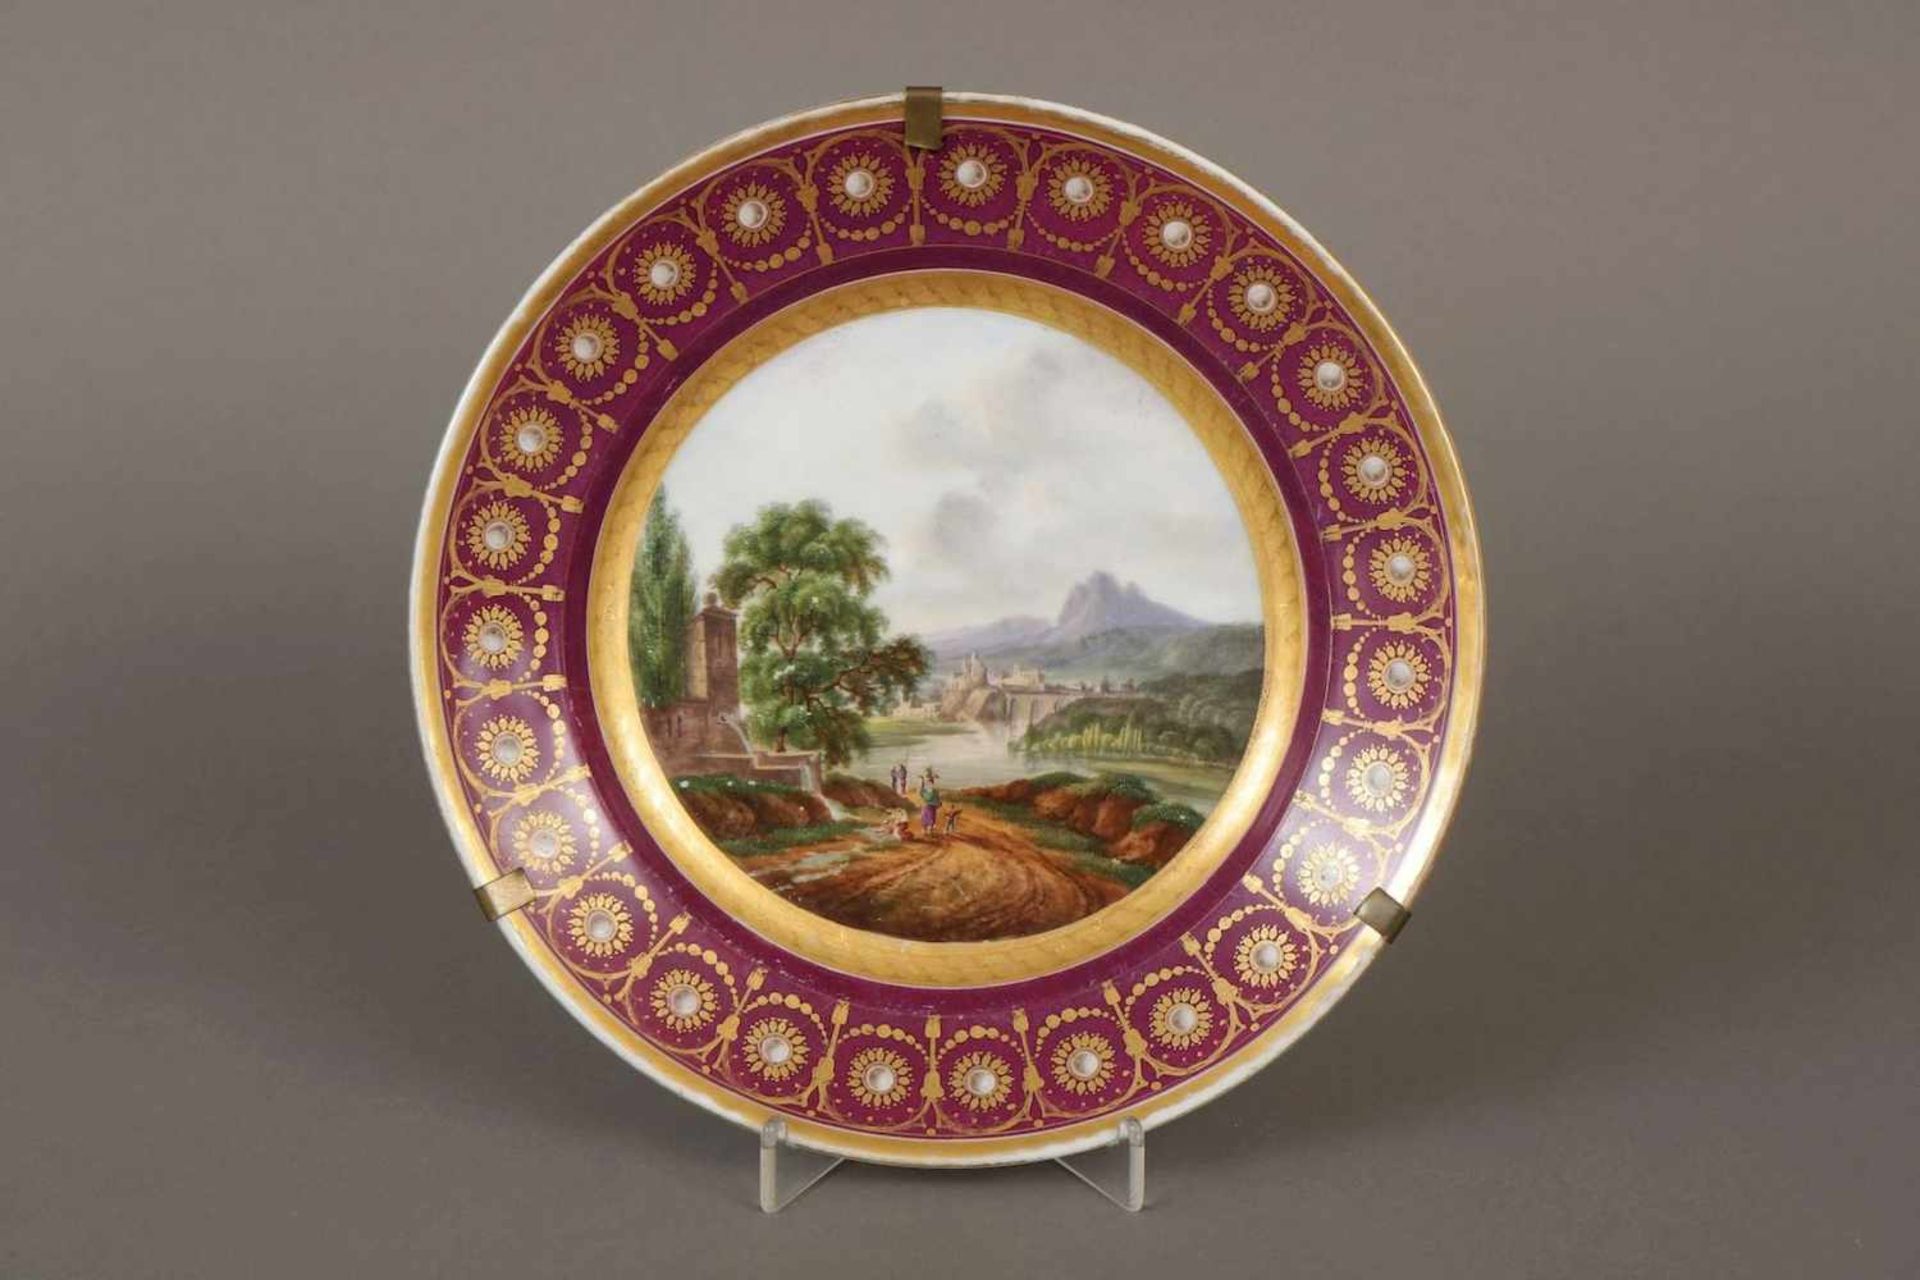 Teller im Wiener StilPorzellan, um 1800, im Spiegel feine Landschaftsmalerei mit Figuren und